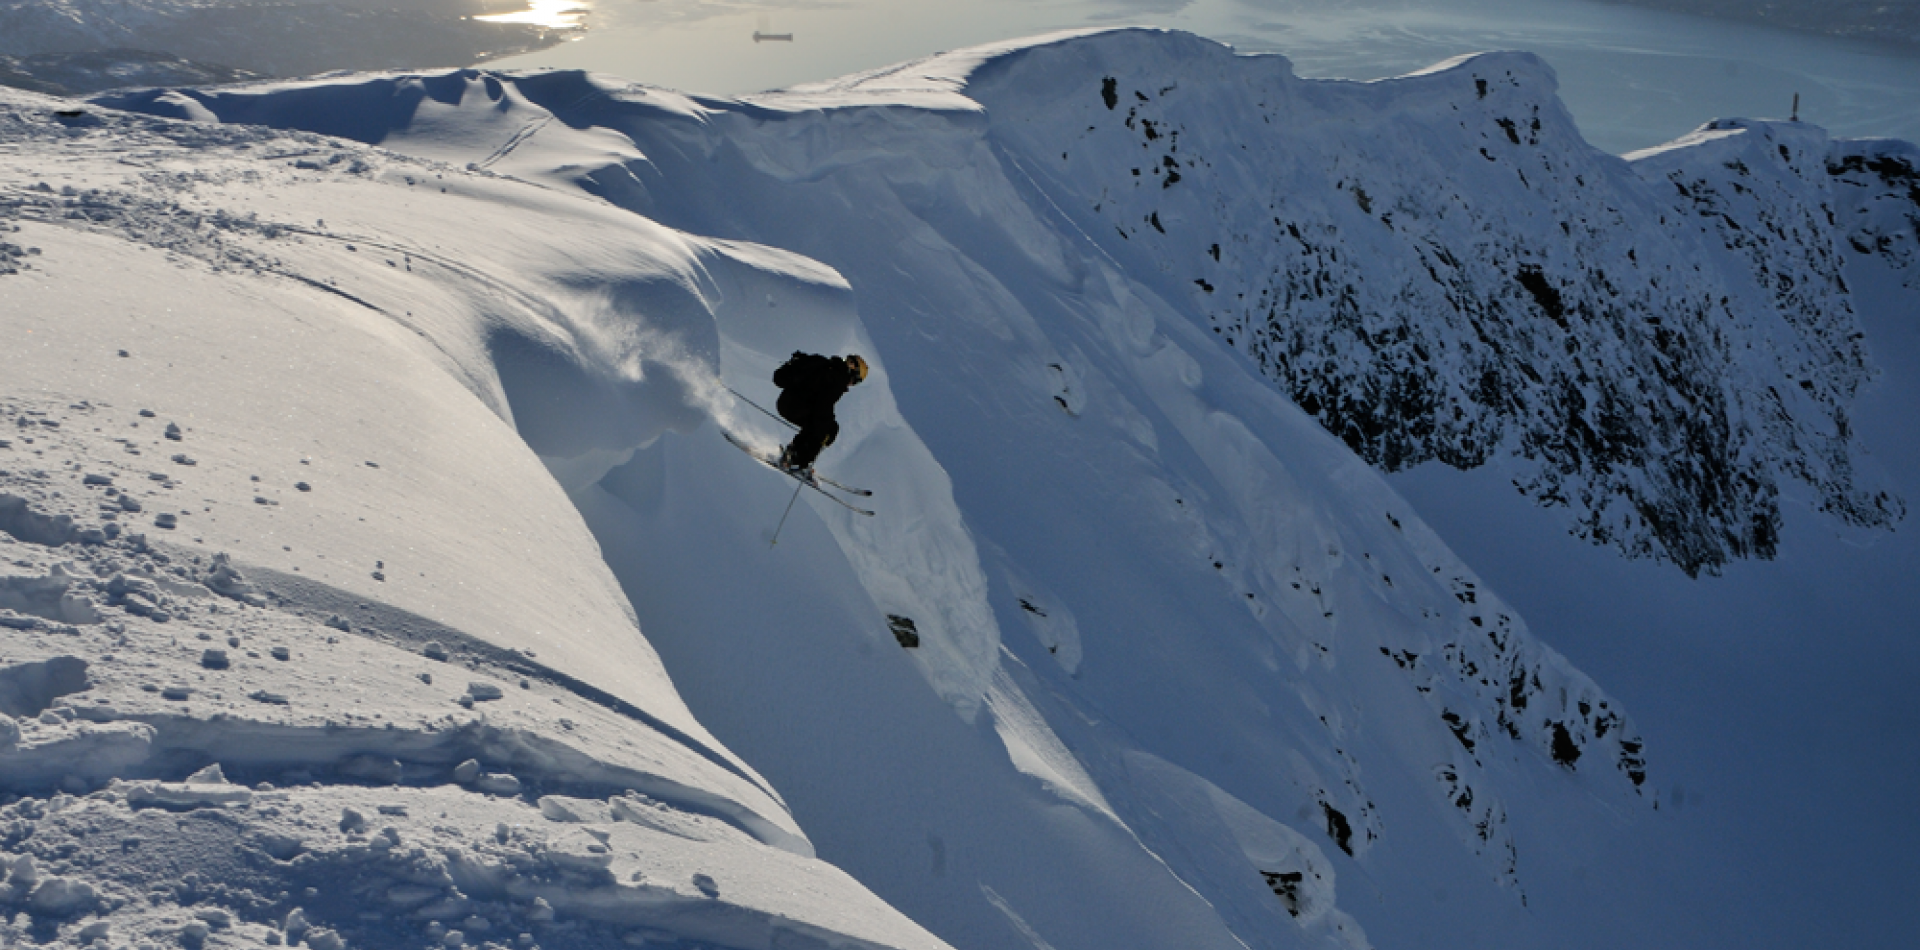 Skitouring in the Narvikregion